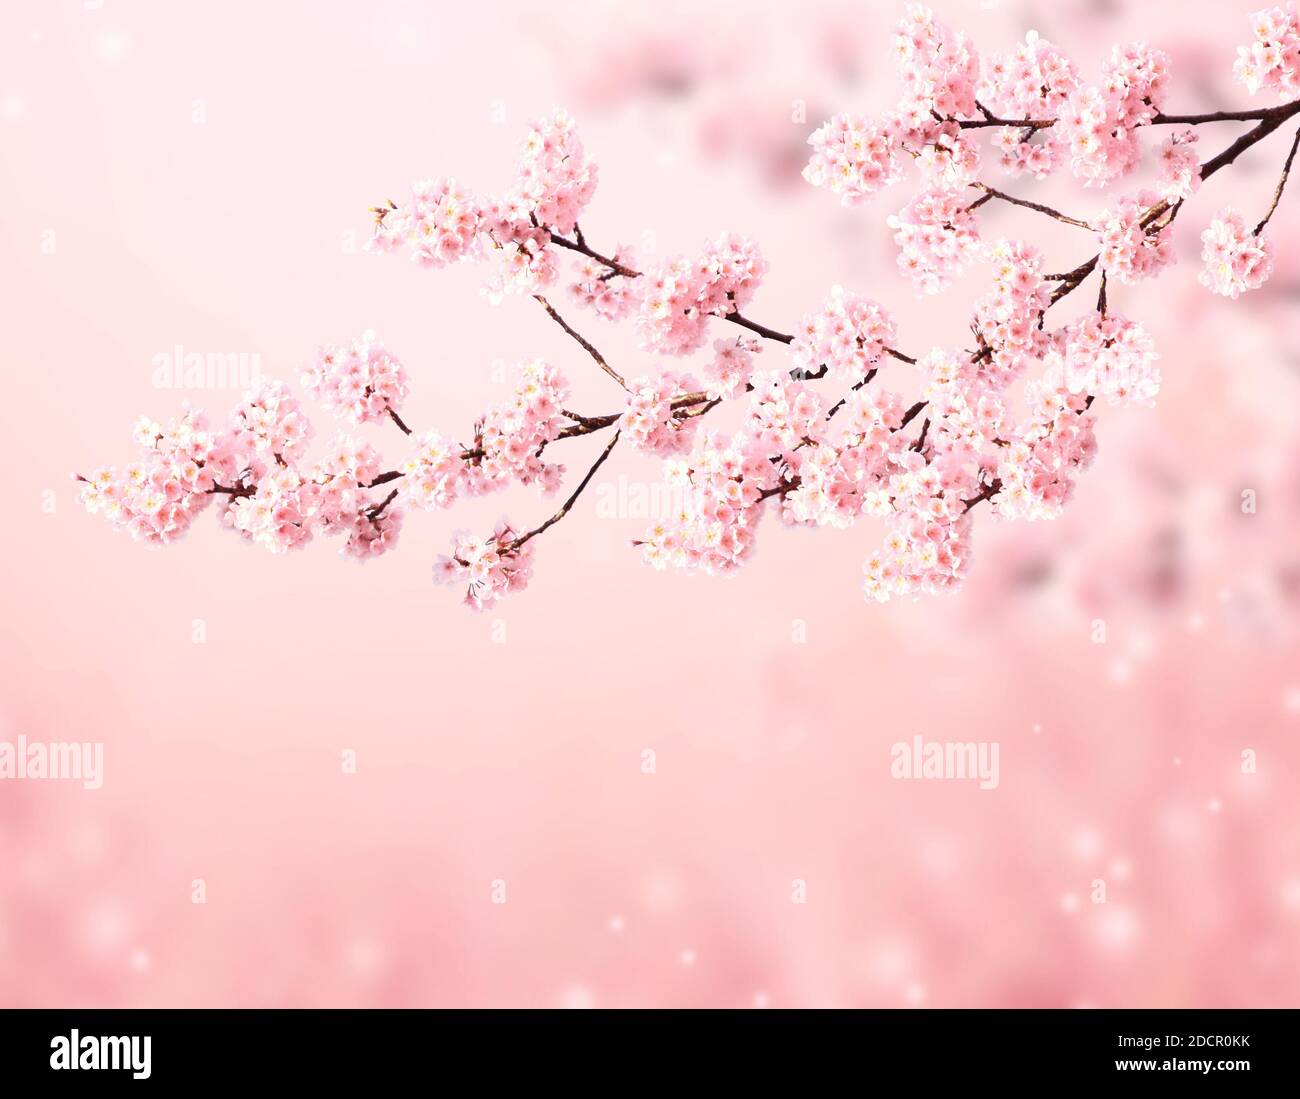 Magica scena con sakura fiori e farfalle. La bellissima natura primavera sfondo. Foto virati al colore rosa chiaro. Copia spazio per il testo Foto Stock